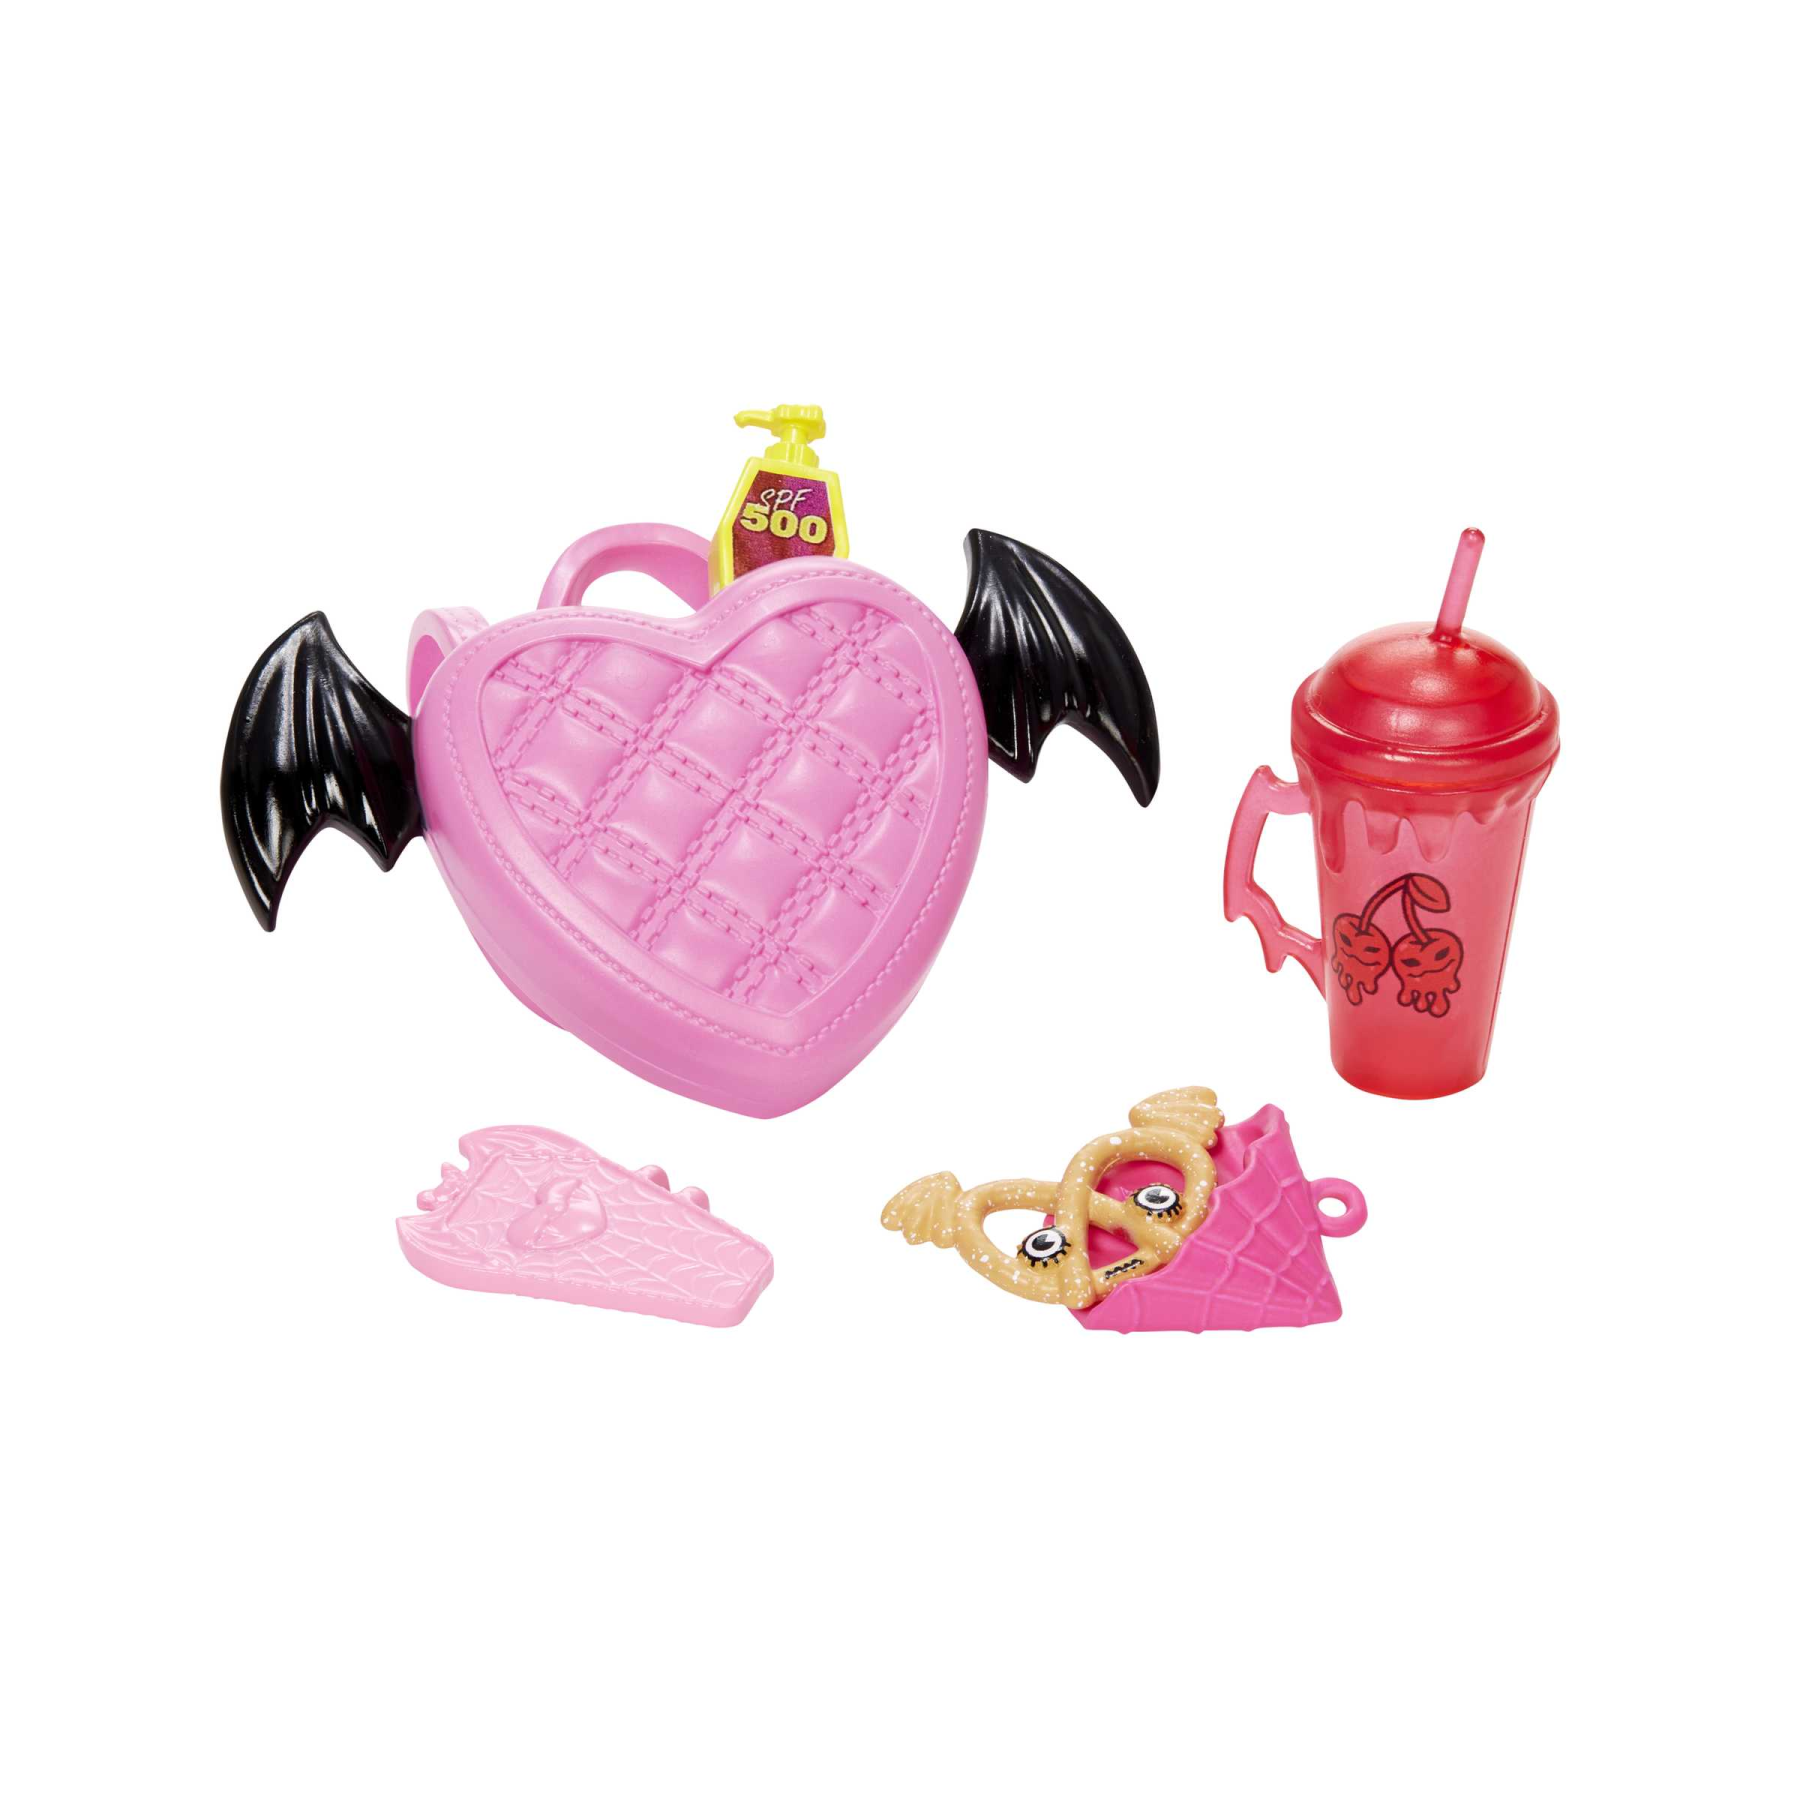 Monster high - draculaura, bambola con accessori e cucciolo di pipistrello, snodata e alla moda con capelli rosa e neri, giocattolo per bambini, 4+ anni, hhk51 - Monster High